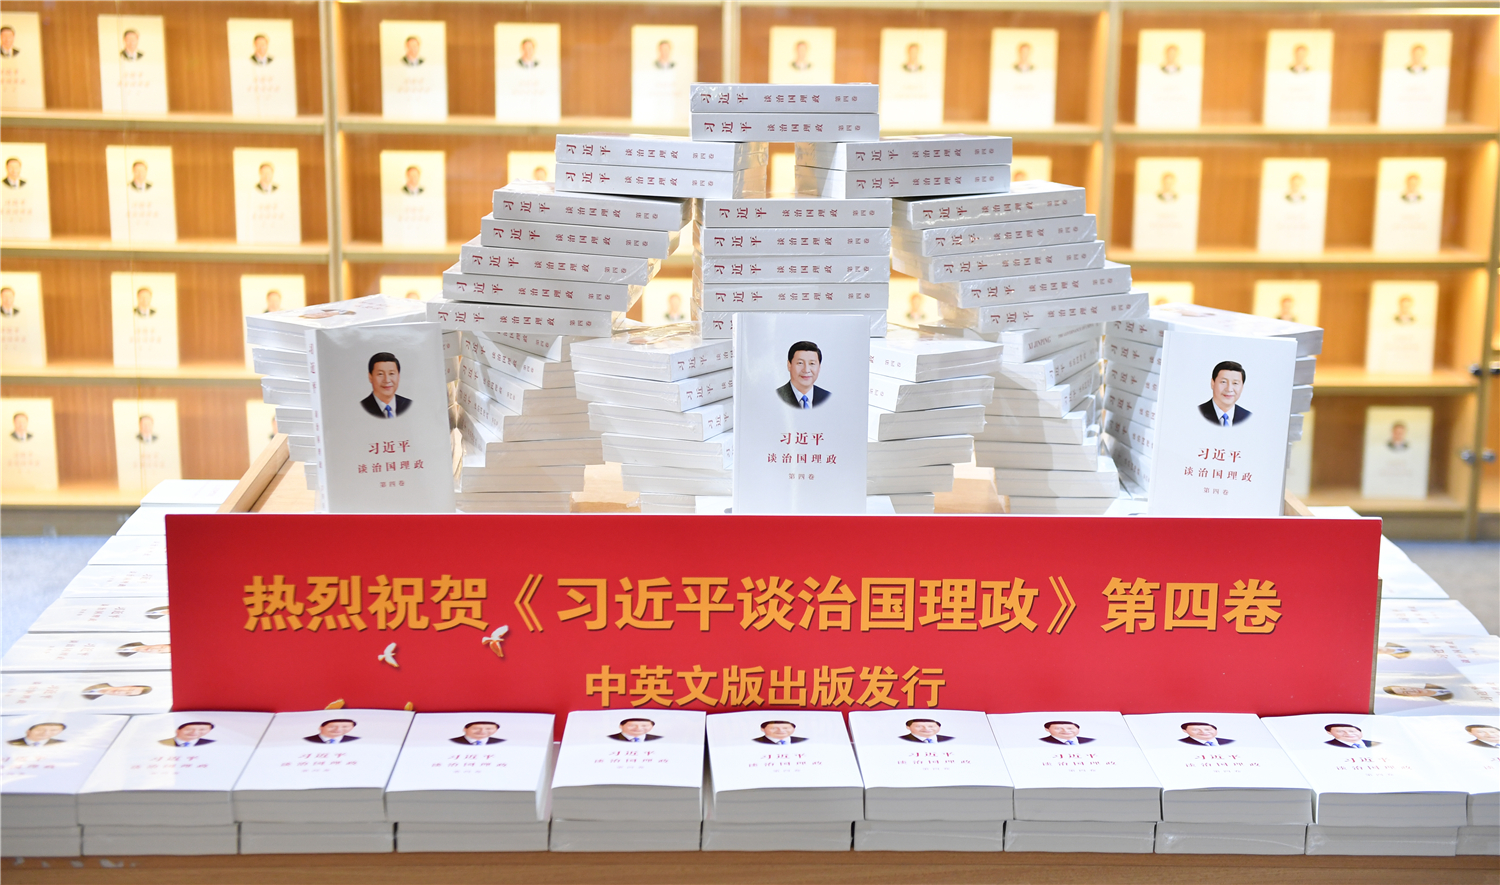 《习近平谈治国理政》第四卷在福建发行 首批图书已在全省新华书店同步上架